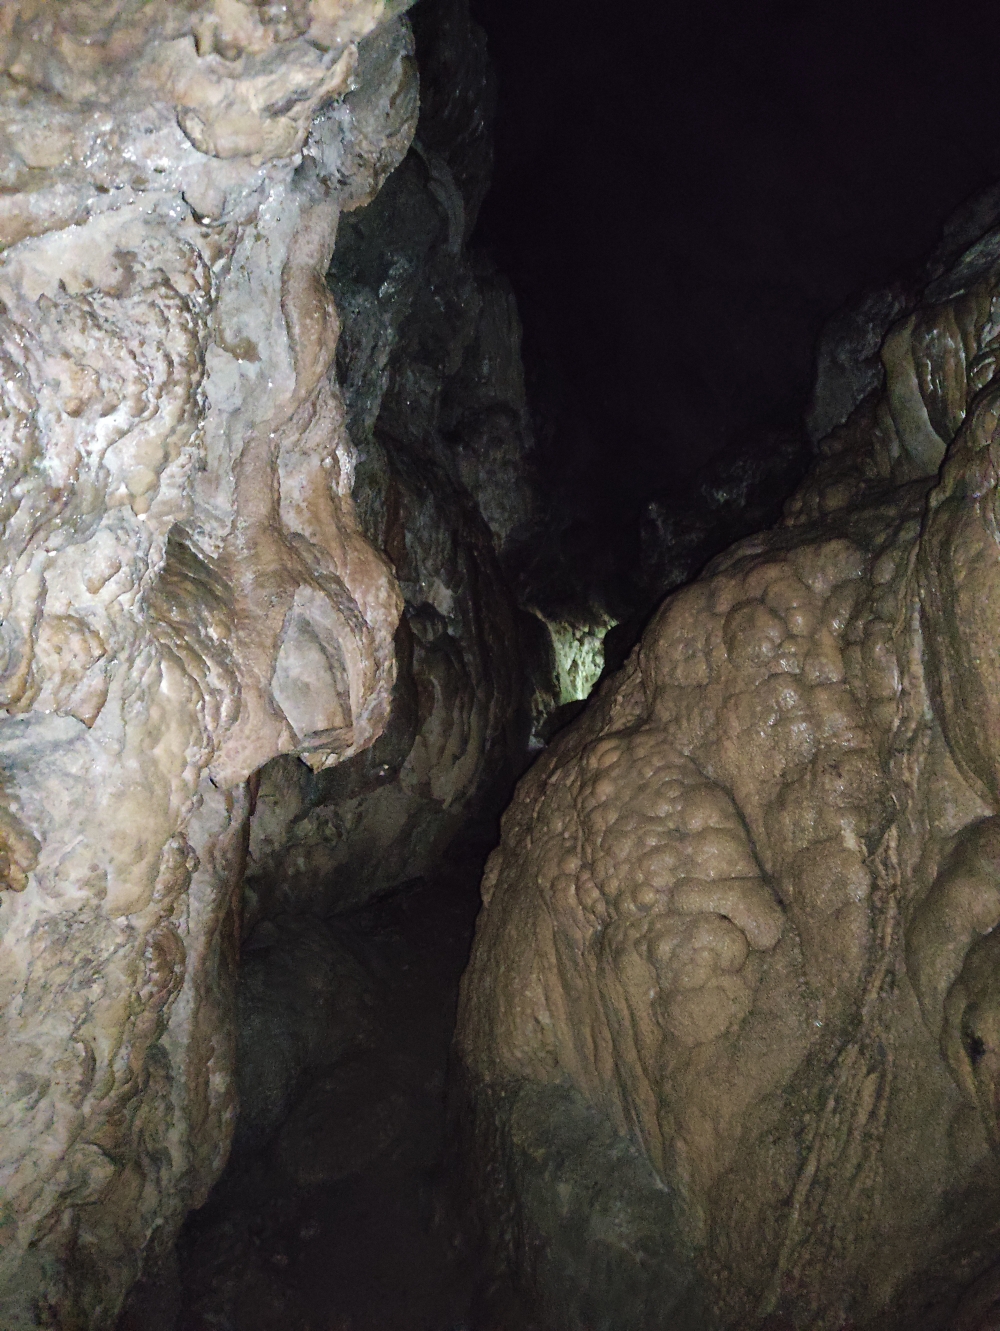 Höhle -> Schleierfälle: In der Höhle